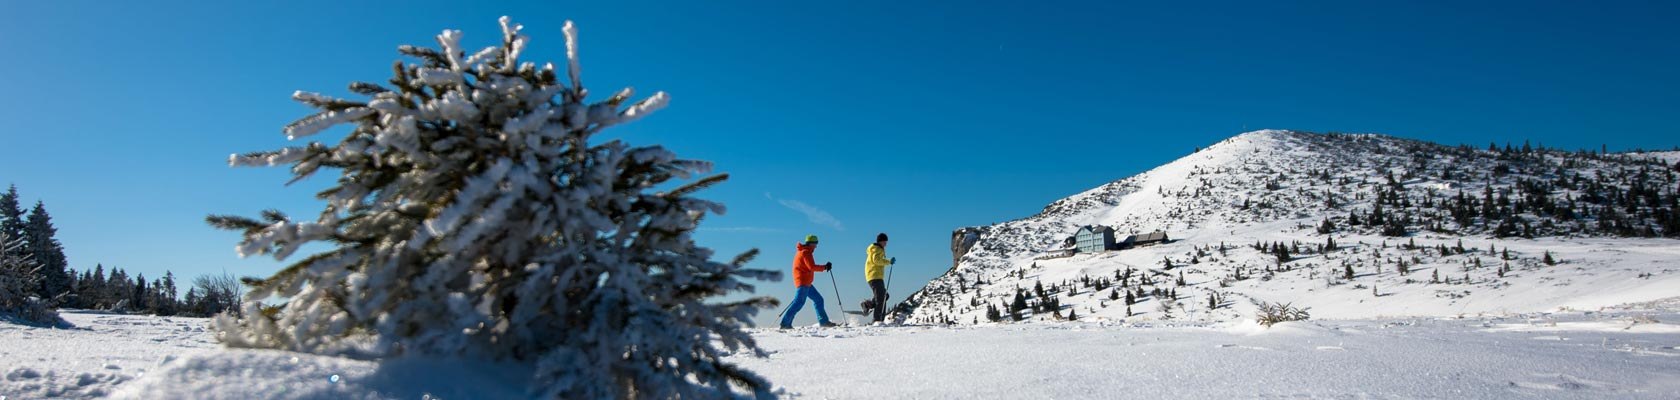 Schneeschuhwandern auf der Rax, © Wiener Alpen/Claudia Ziegler